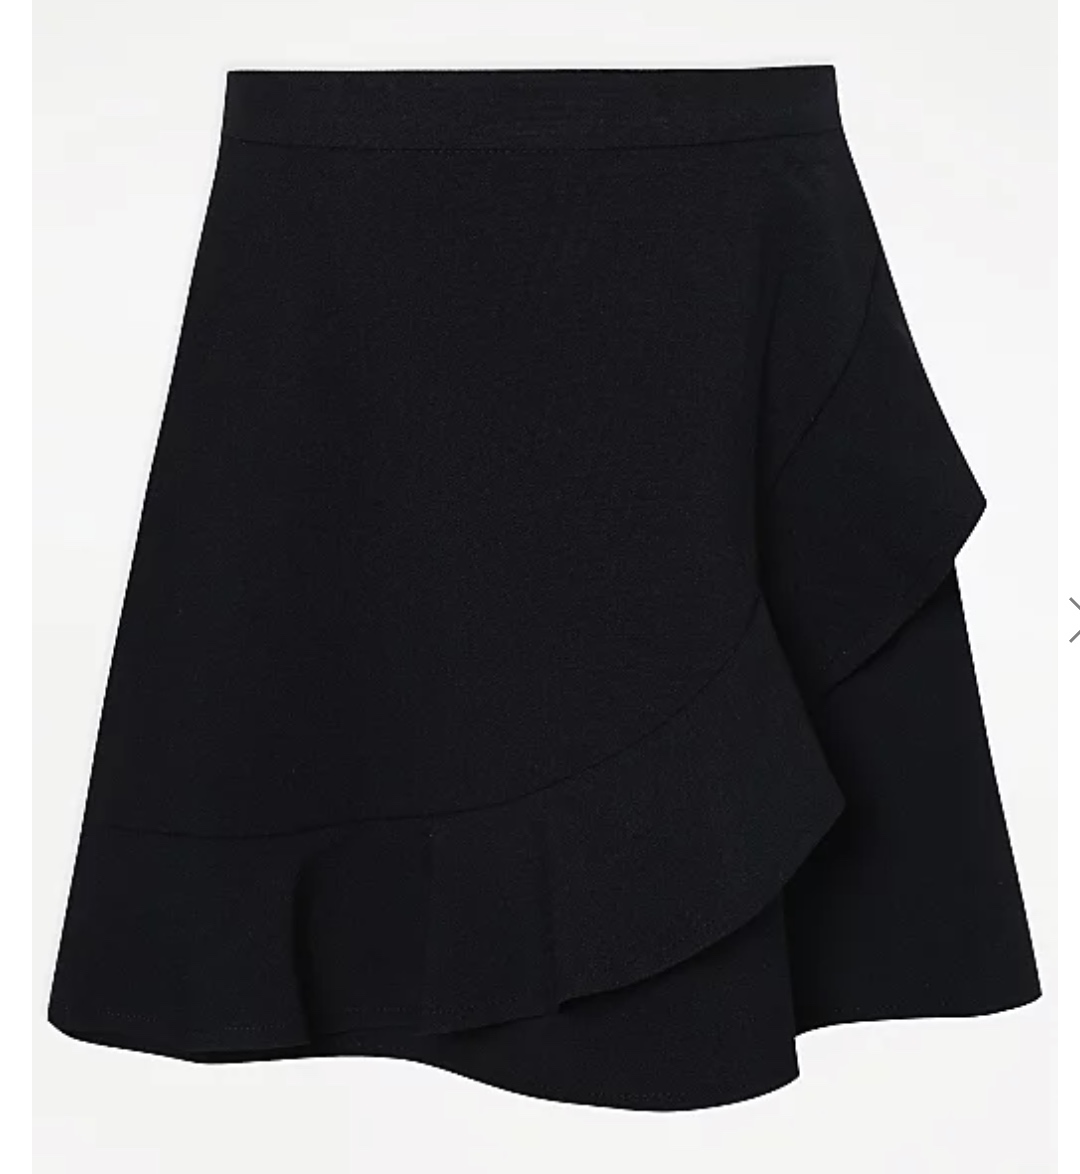 Girls' Navy Blue Frill A-Line Skirt, Elasticated Waist 5-6 Y